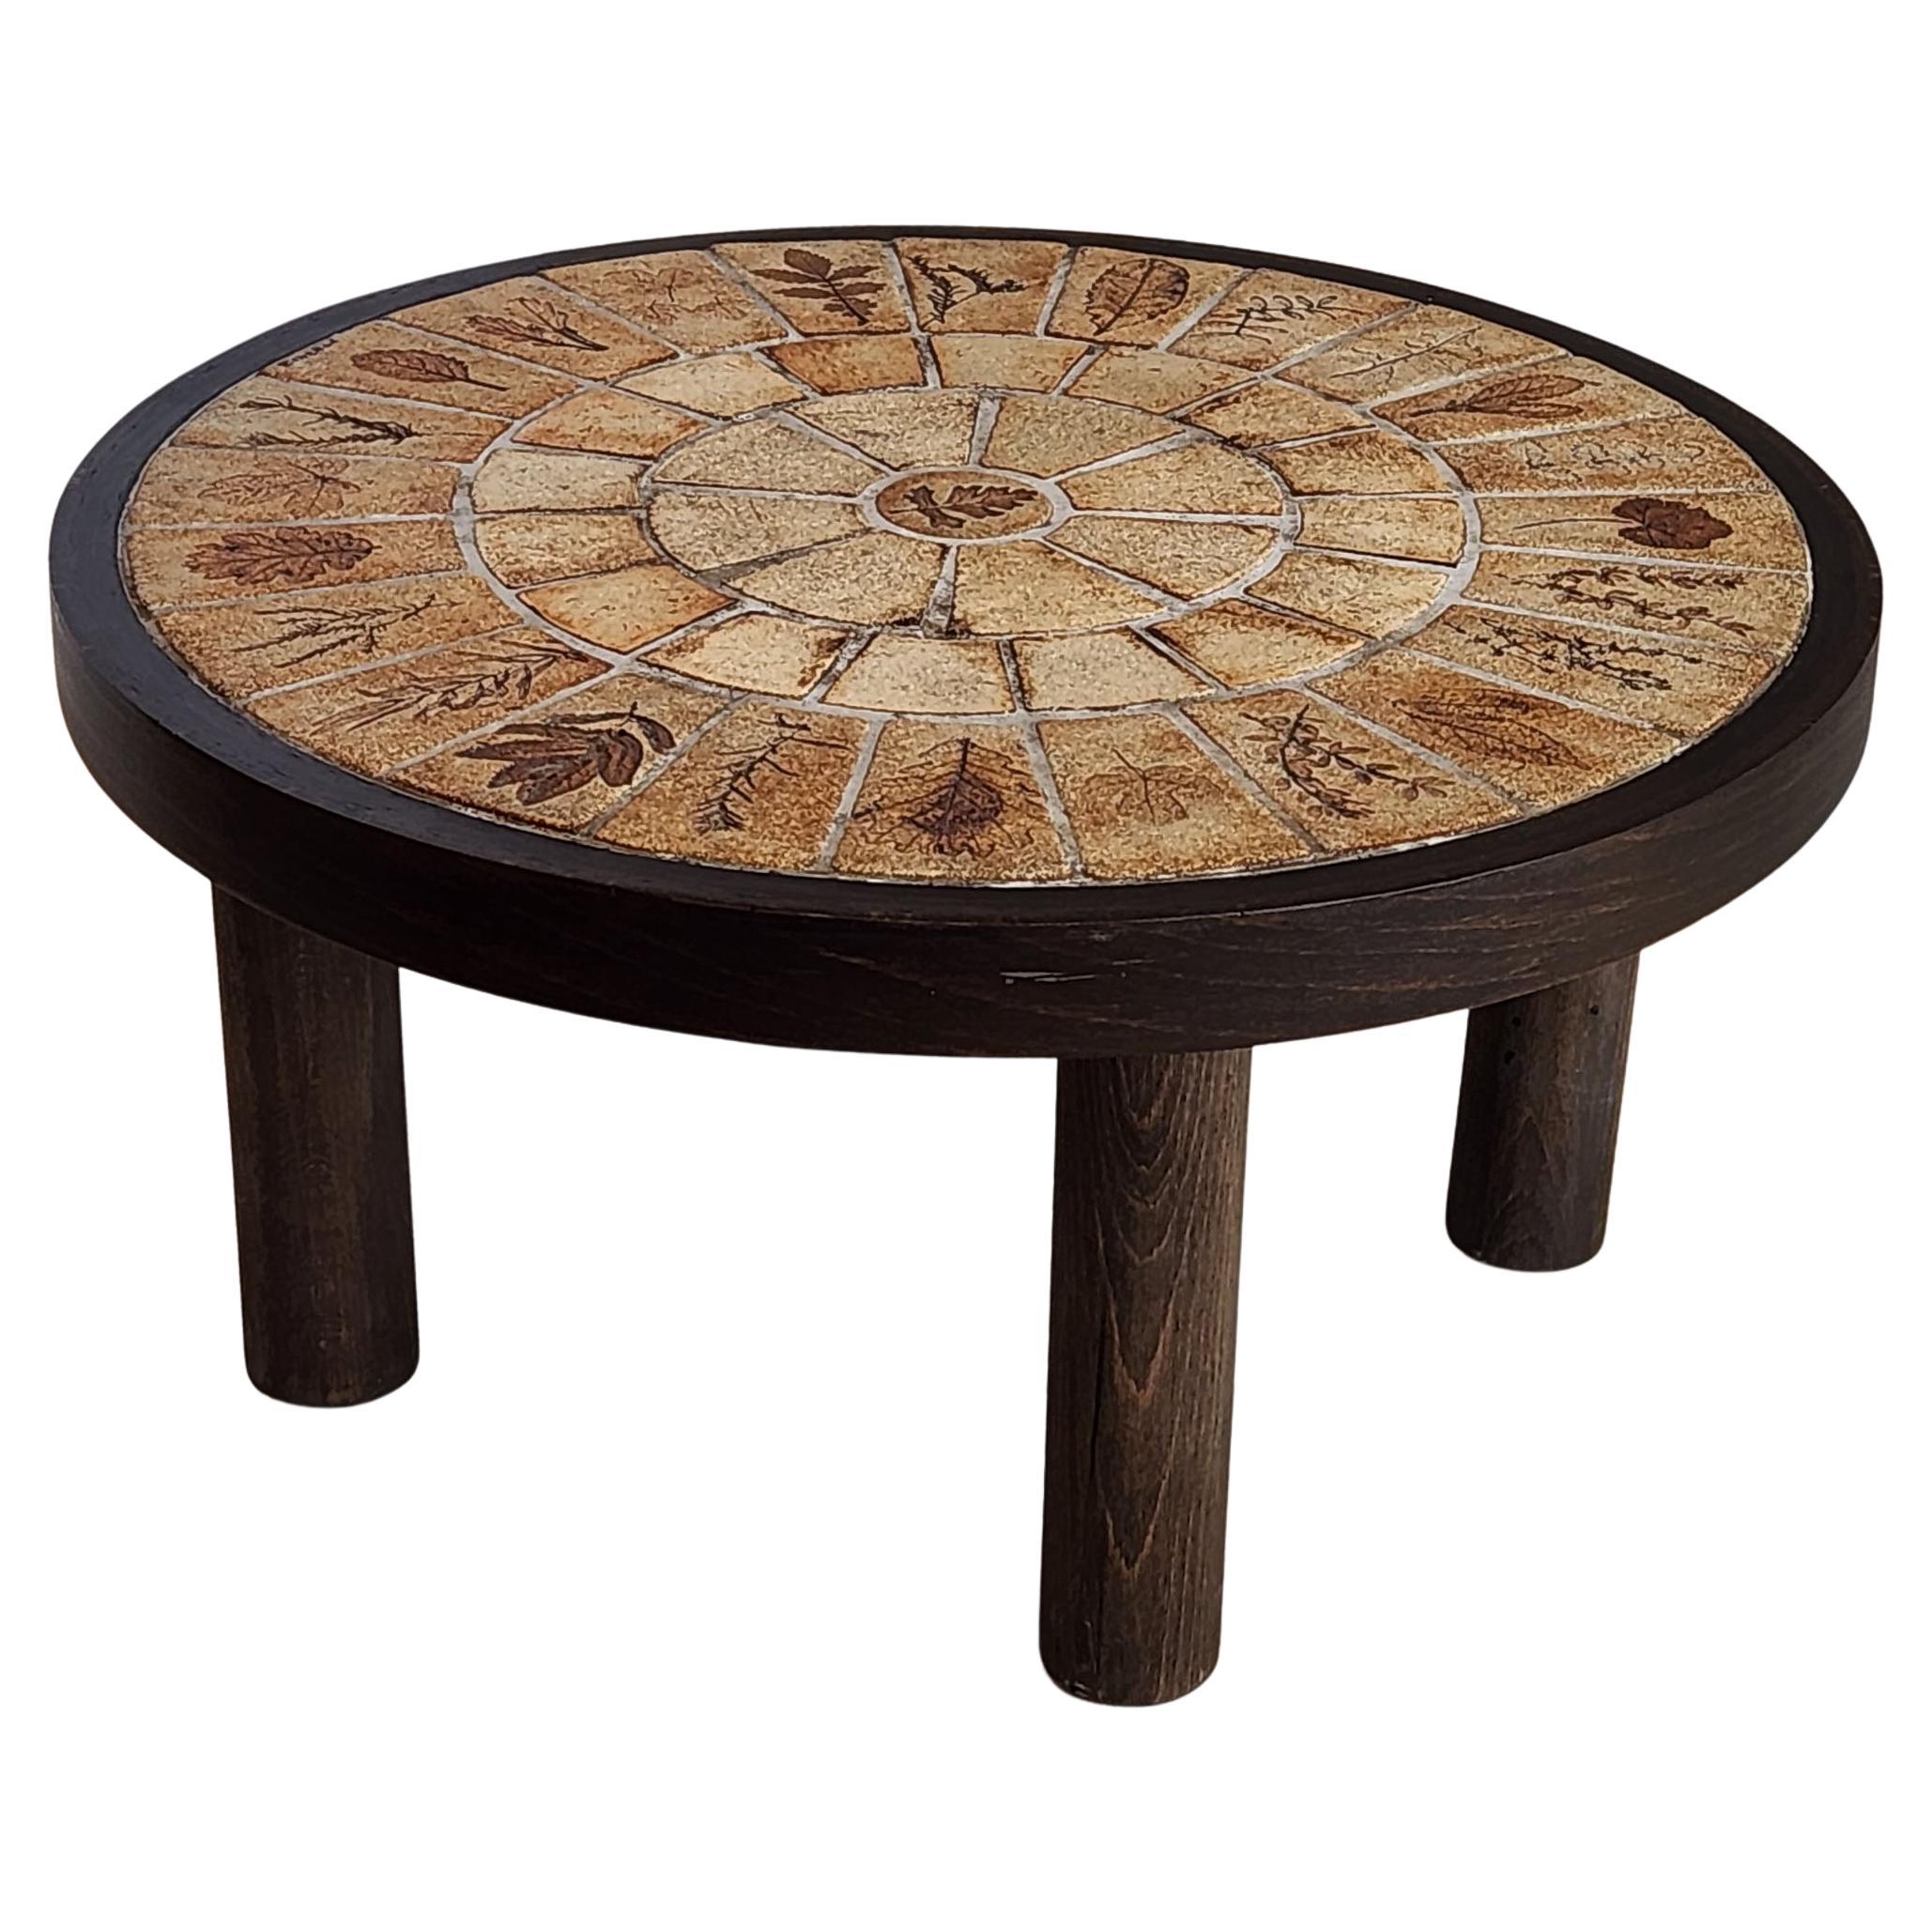 Roger Capron - Table d'appoint ronde vintage avec carreaux de garnison sur cadre en bois 